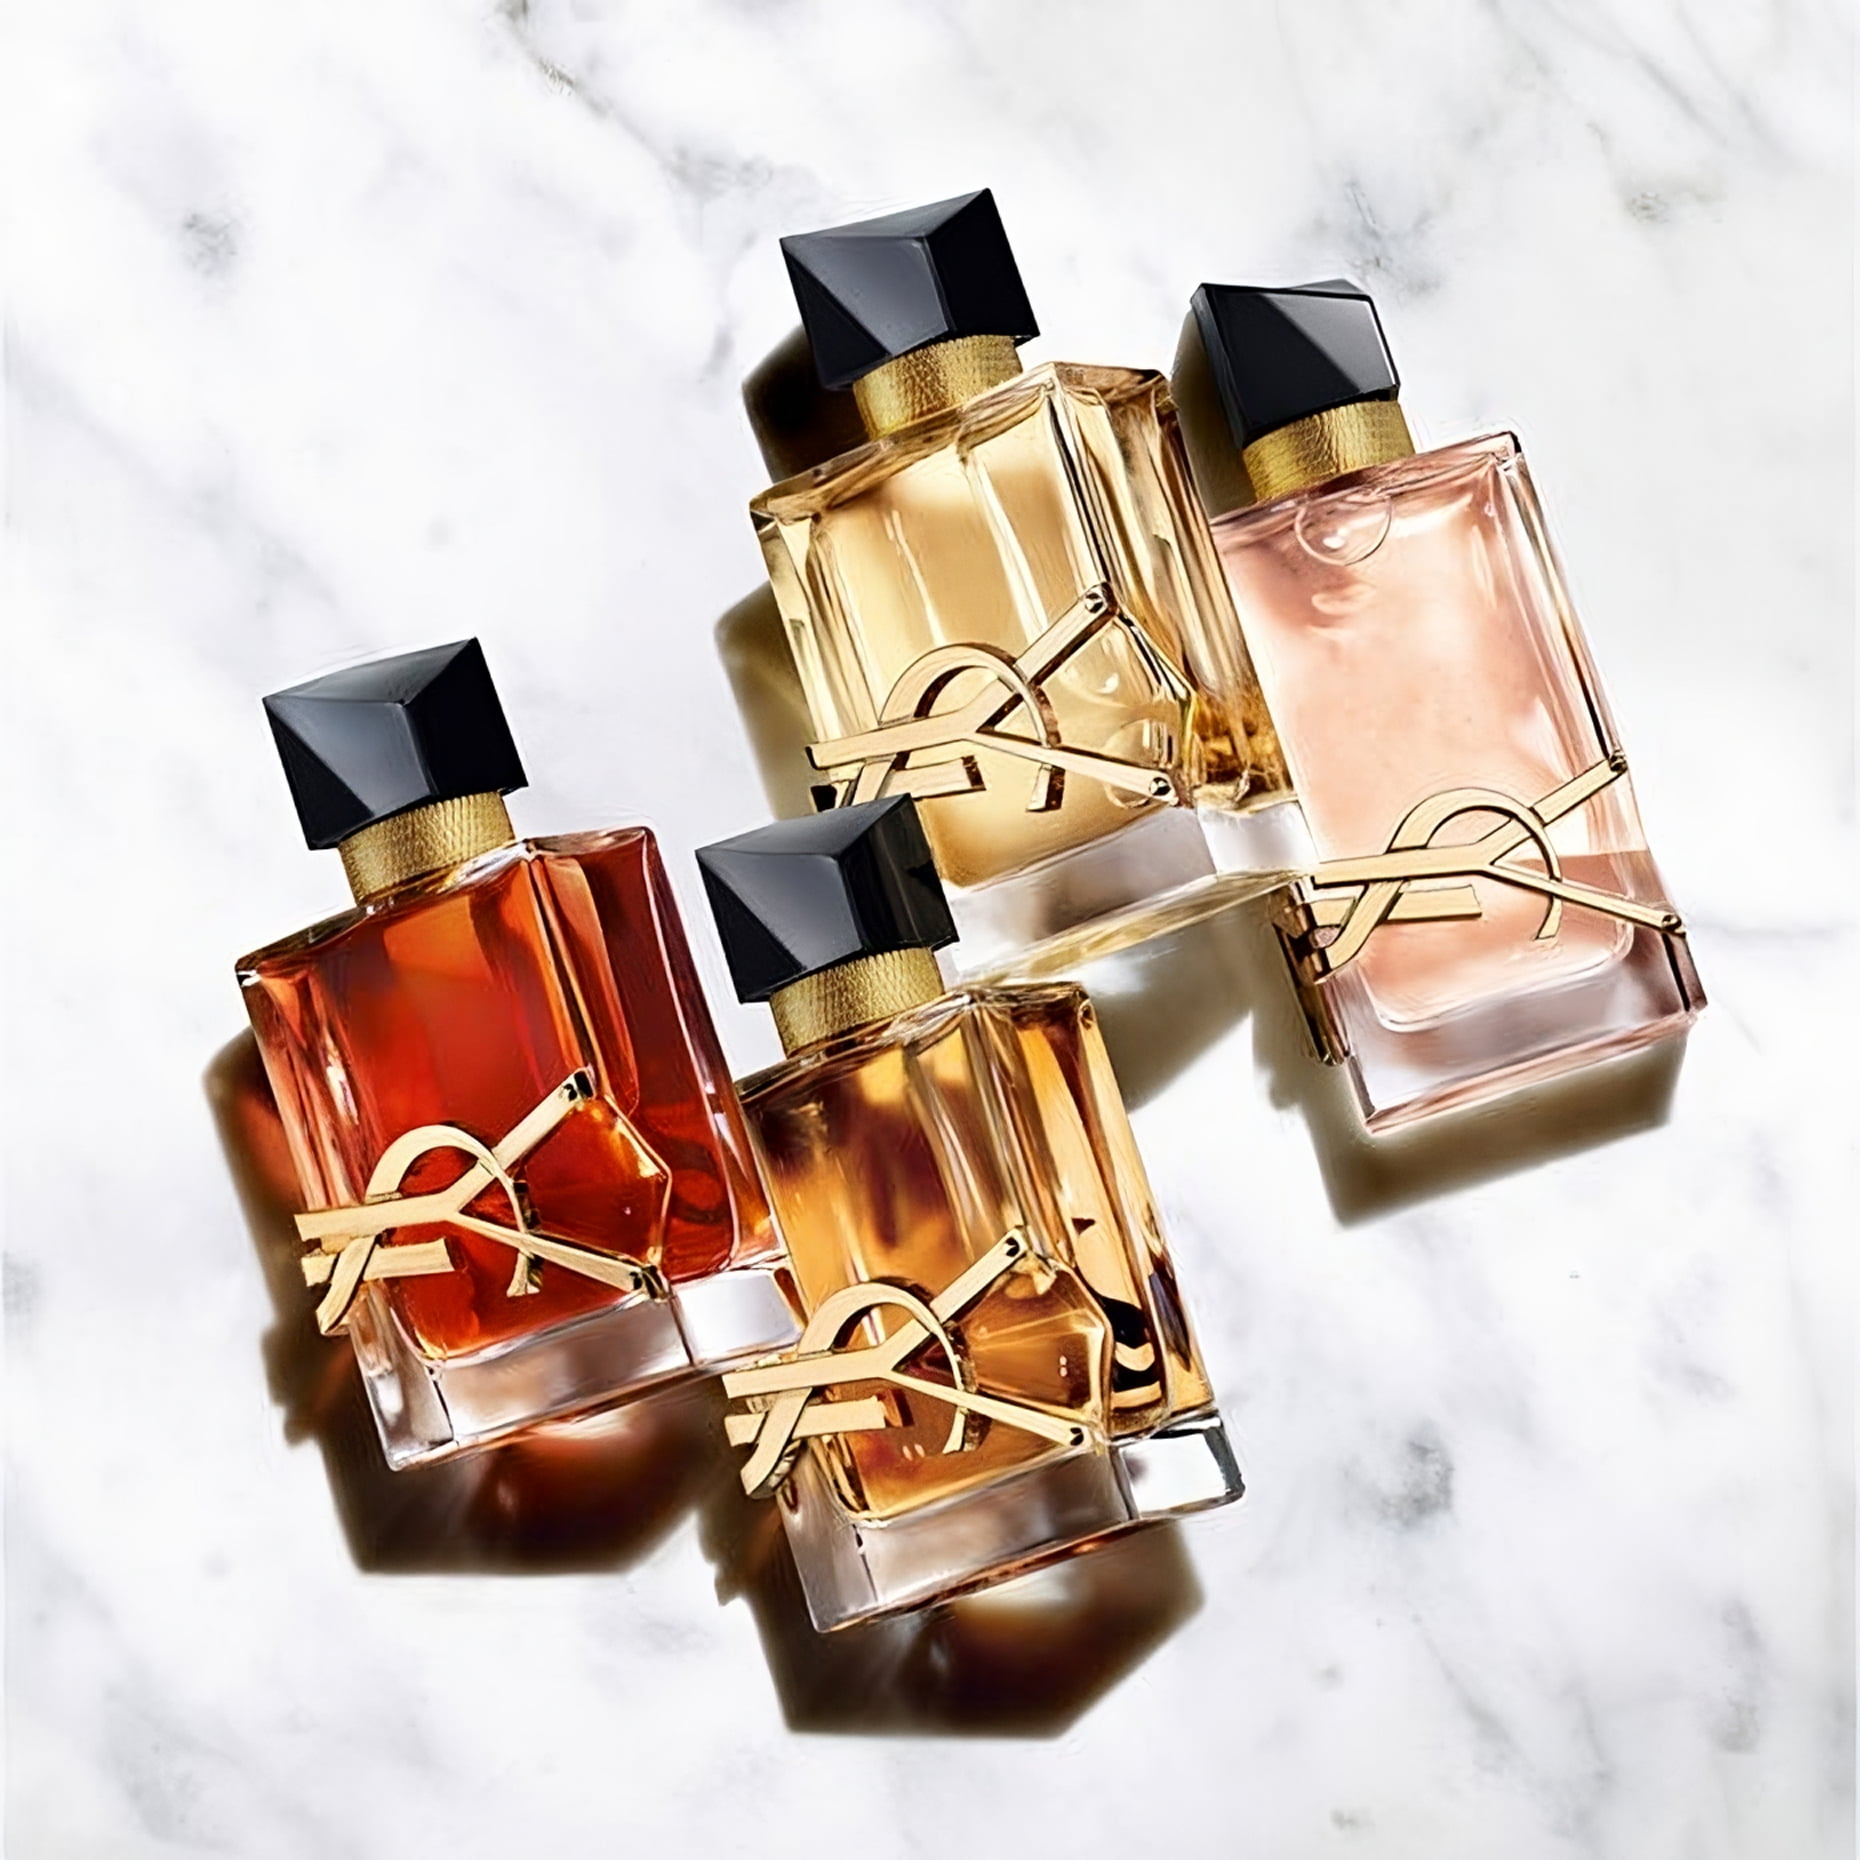 Perfume Libre Le Parfum Yves Saint Laurent Feminino - Eau de Parfum - Época  Cosméticos